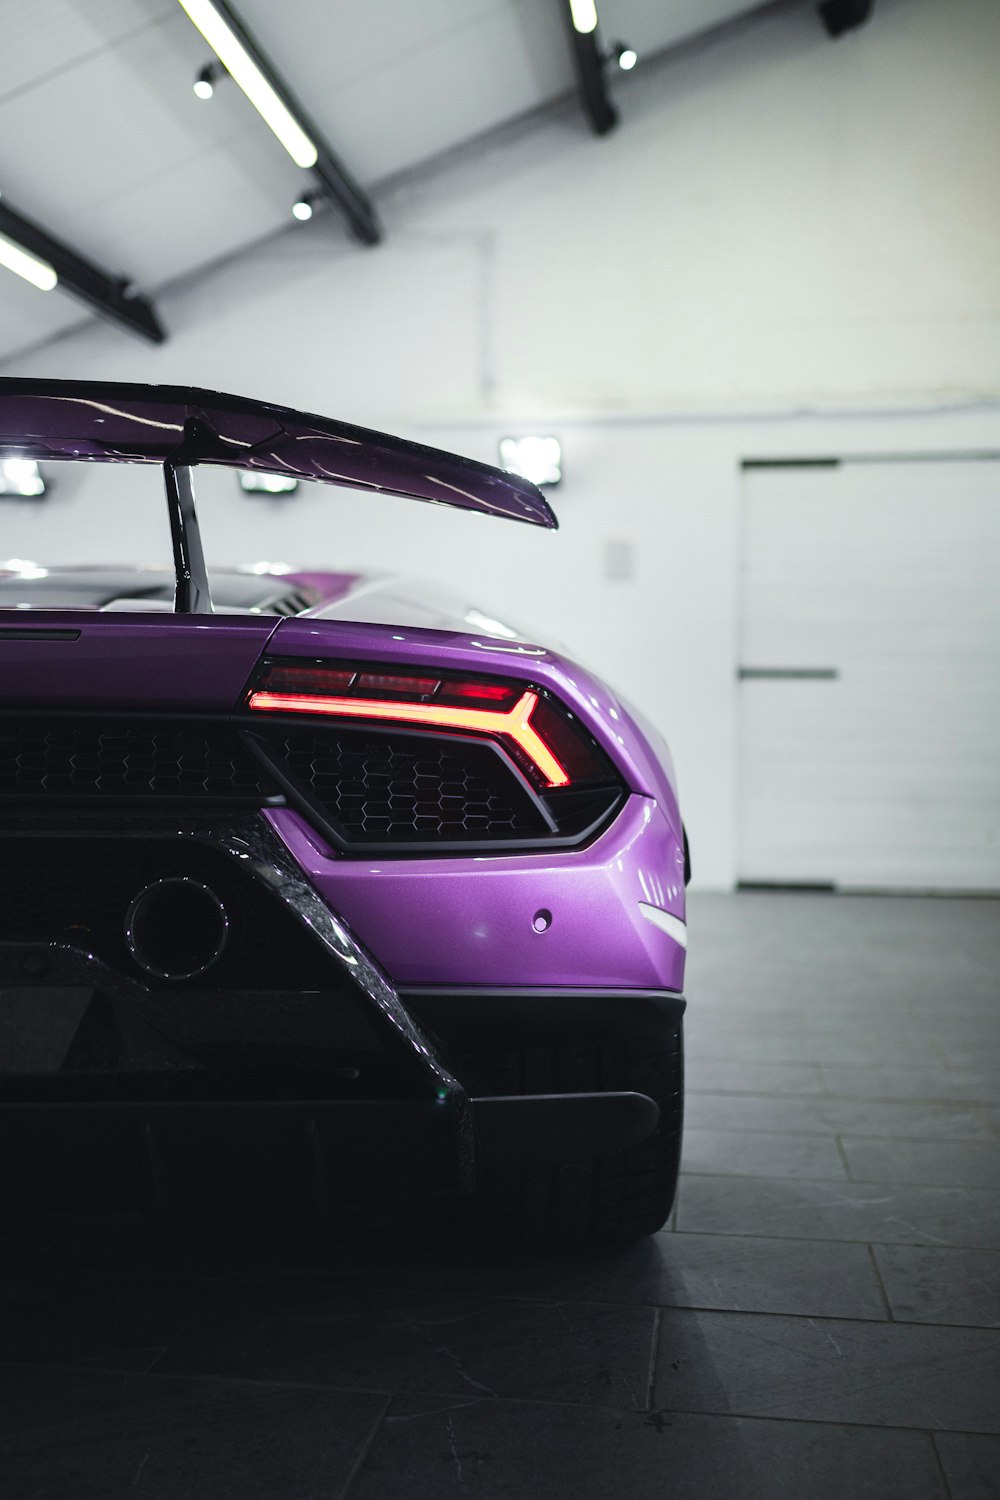 voiture violette et noire dans une chambre